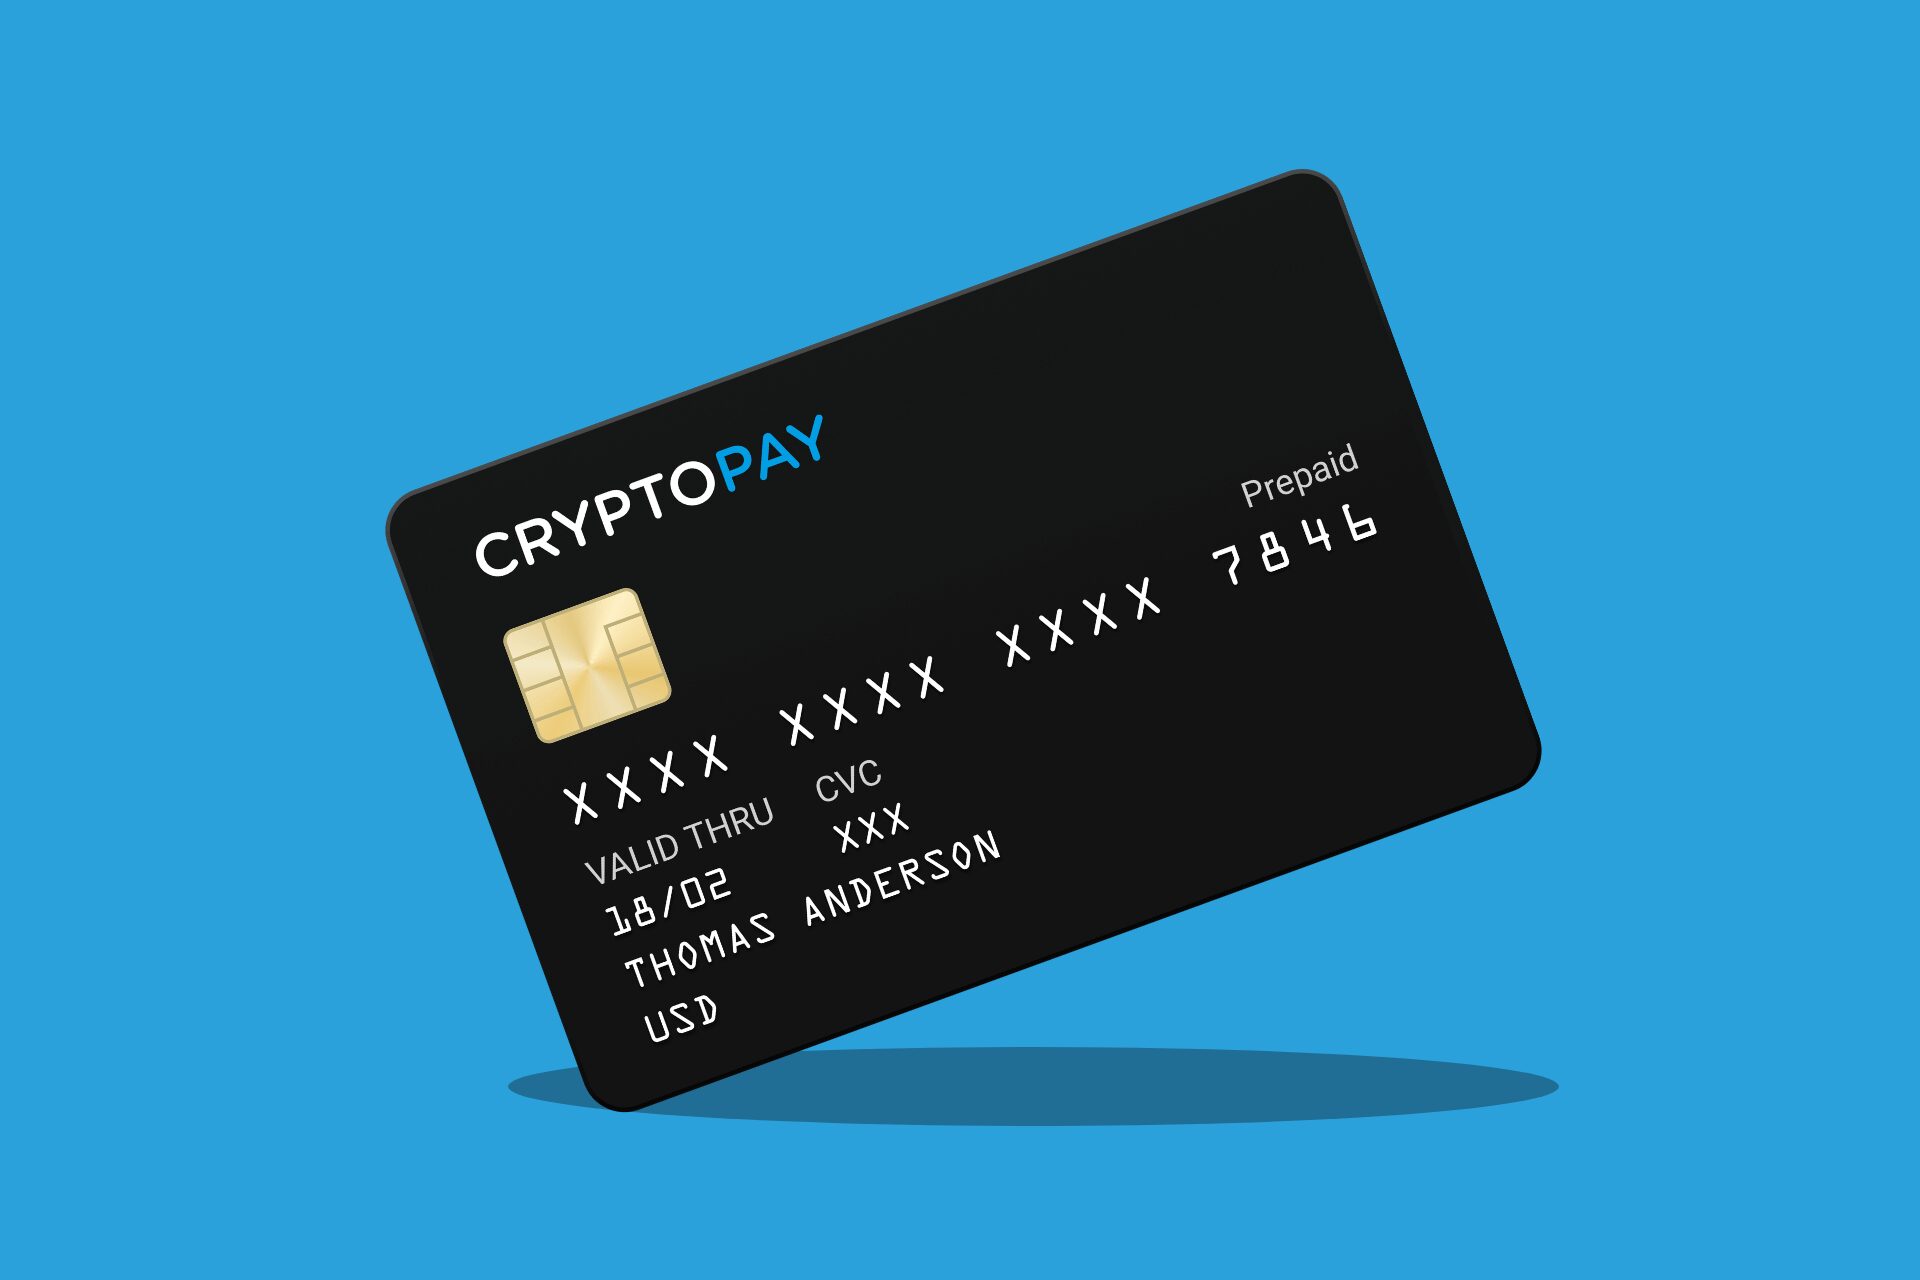 Cryptopay bitcoin debit card hackean bitcoins for sale